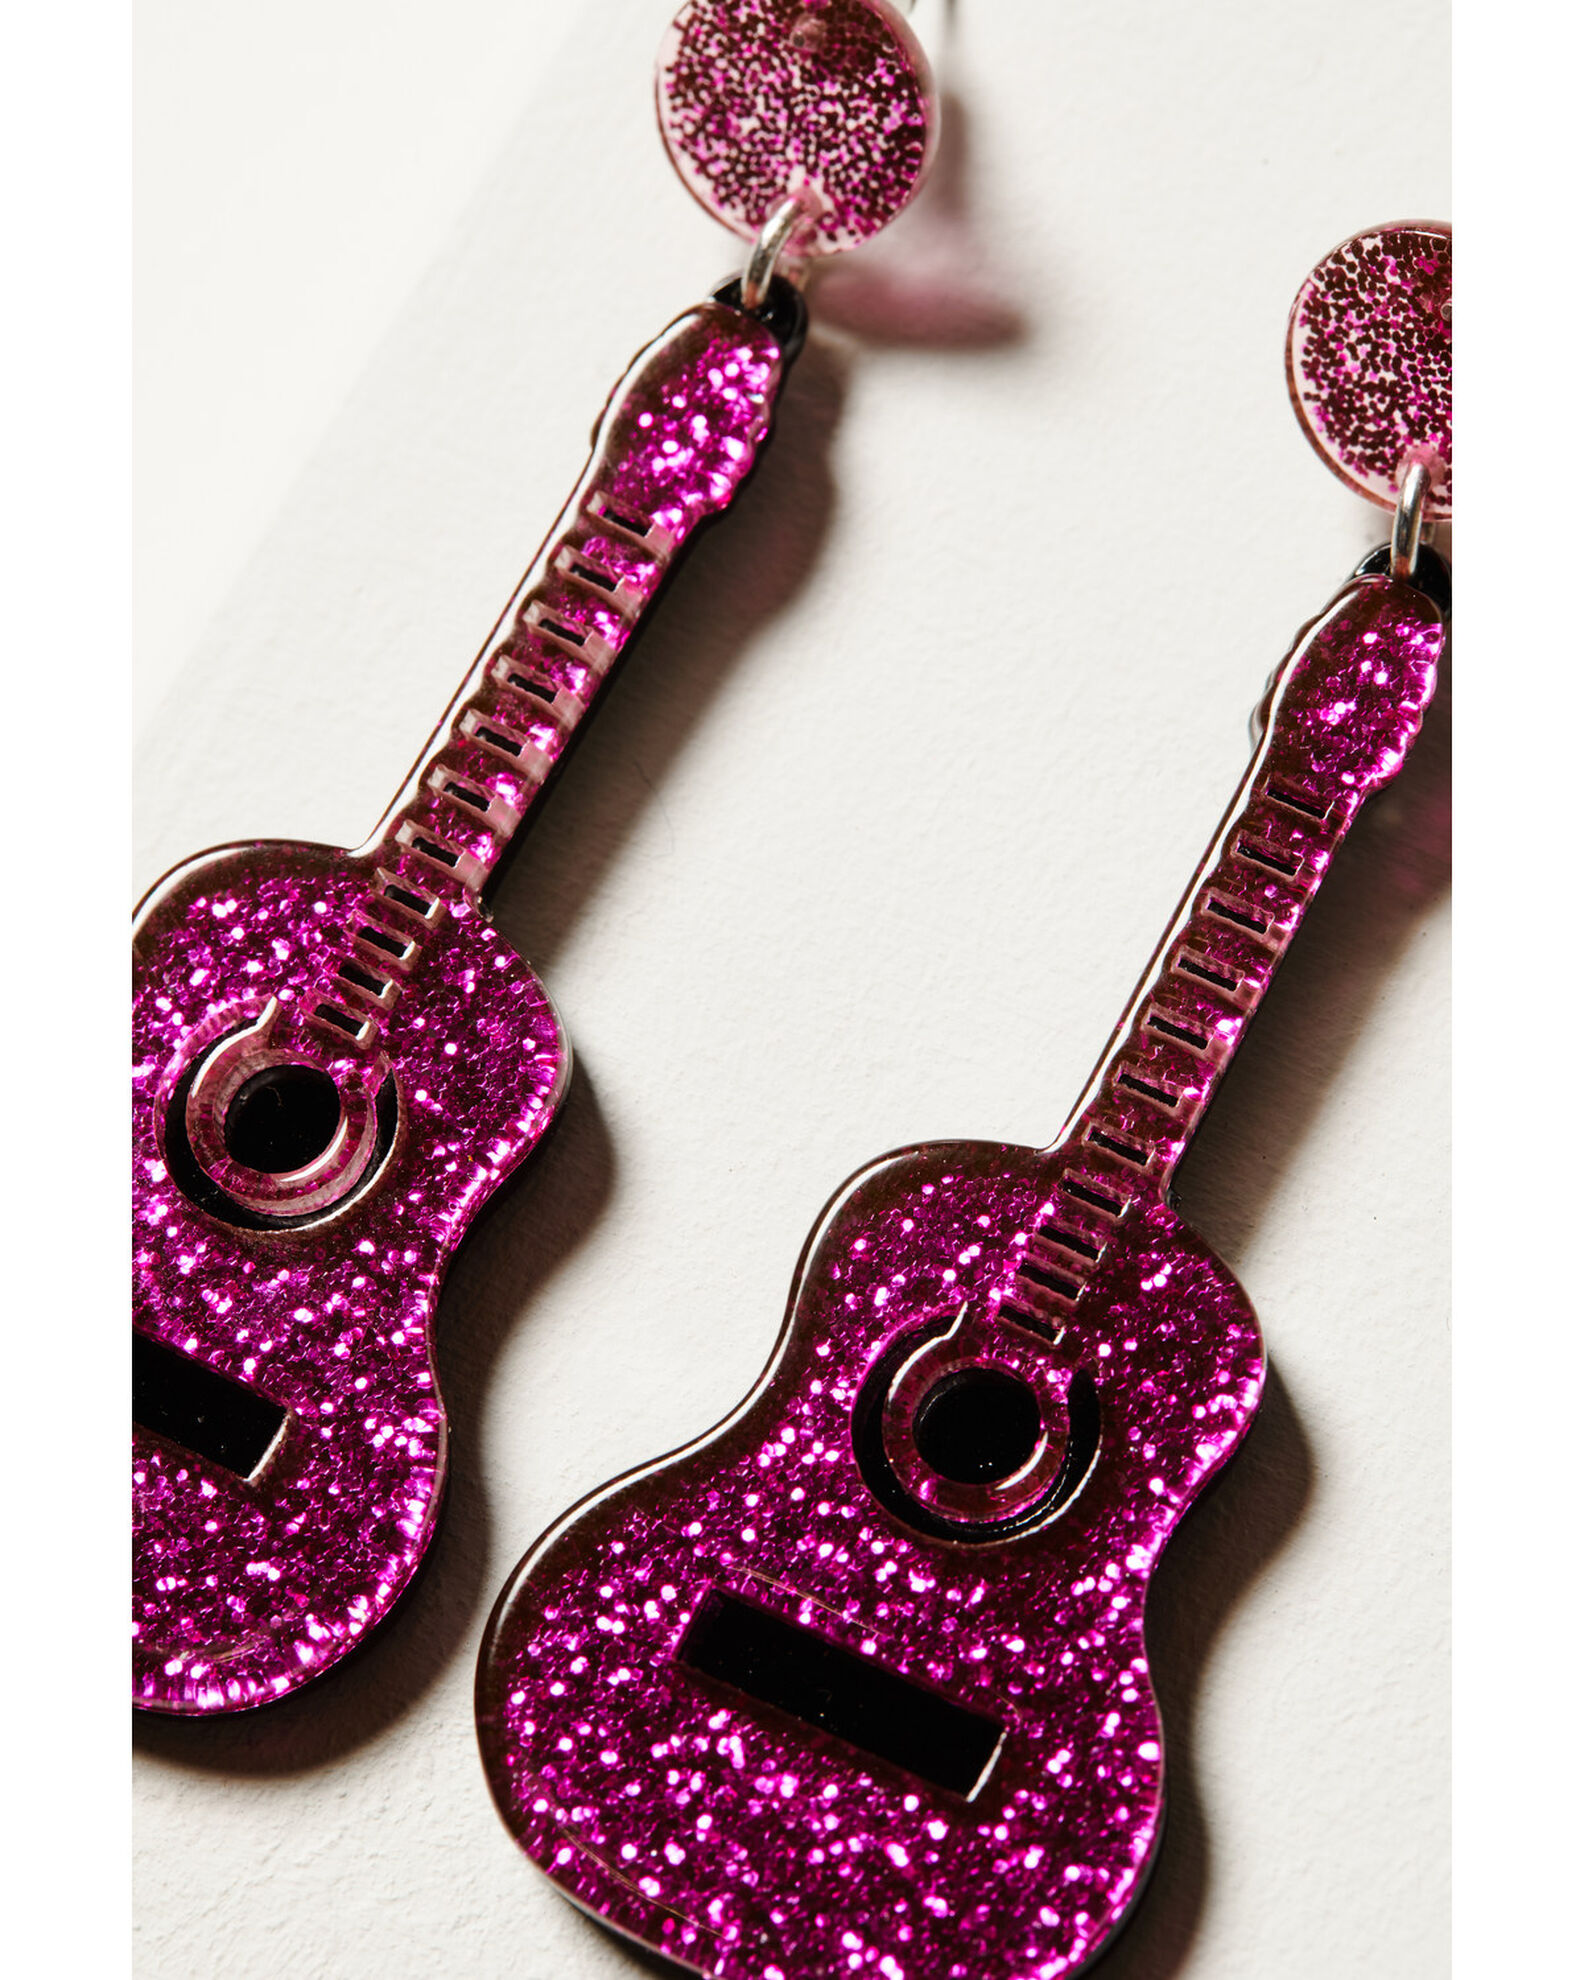 Idyllwind Women's Pink Lady Nashville Guitar Earrings